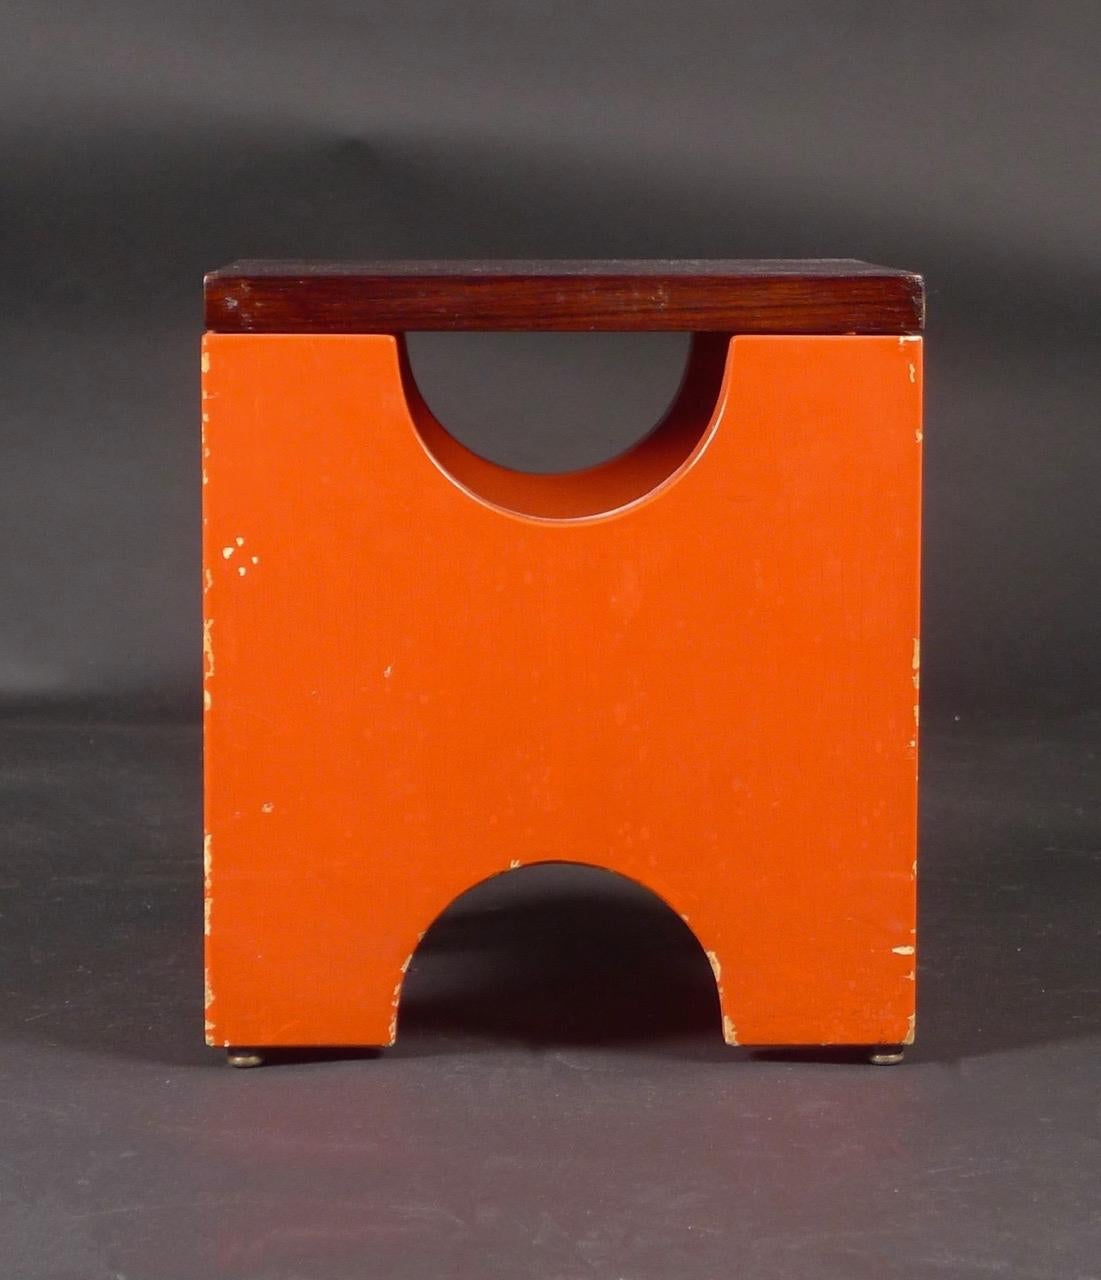 Ettore Sottsass, tabouret Dado, modèle T29, conçu en 1963 et fabriqué par Poltronova, Italie, dans les années 1960.

La base en bois est peinte en rouge brique et le plateau est en noyer.  La base est munie de quatre pieds métalliques à boutons.